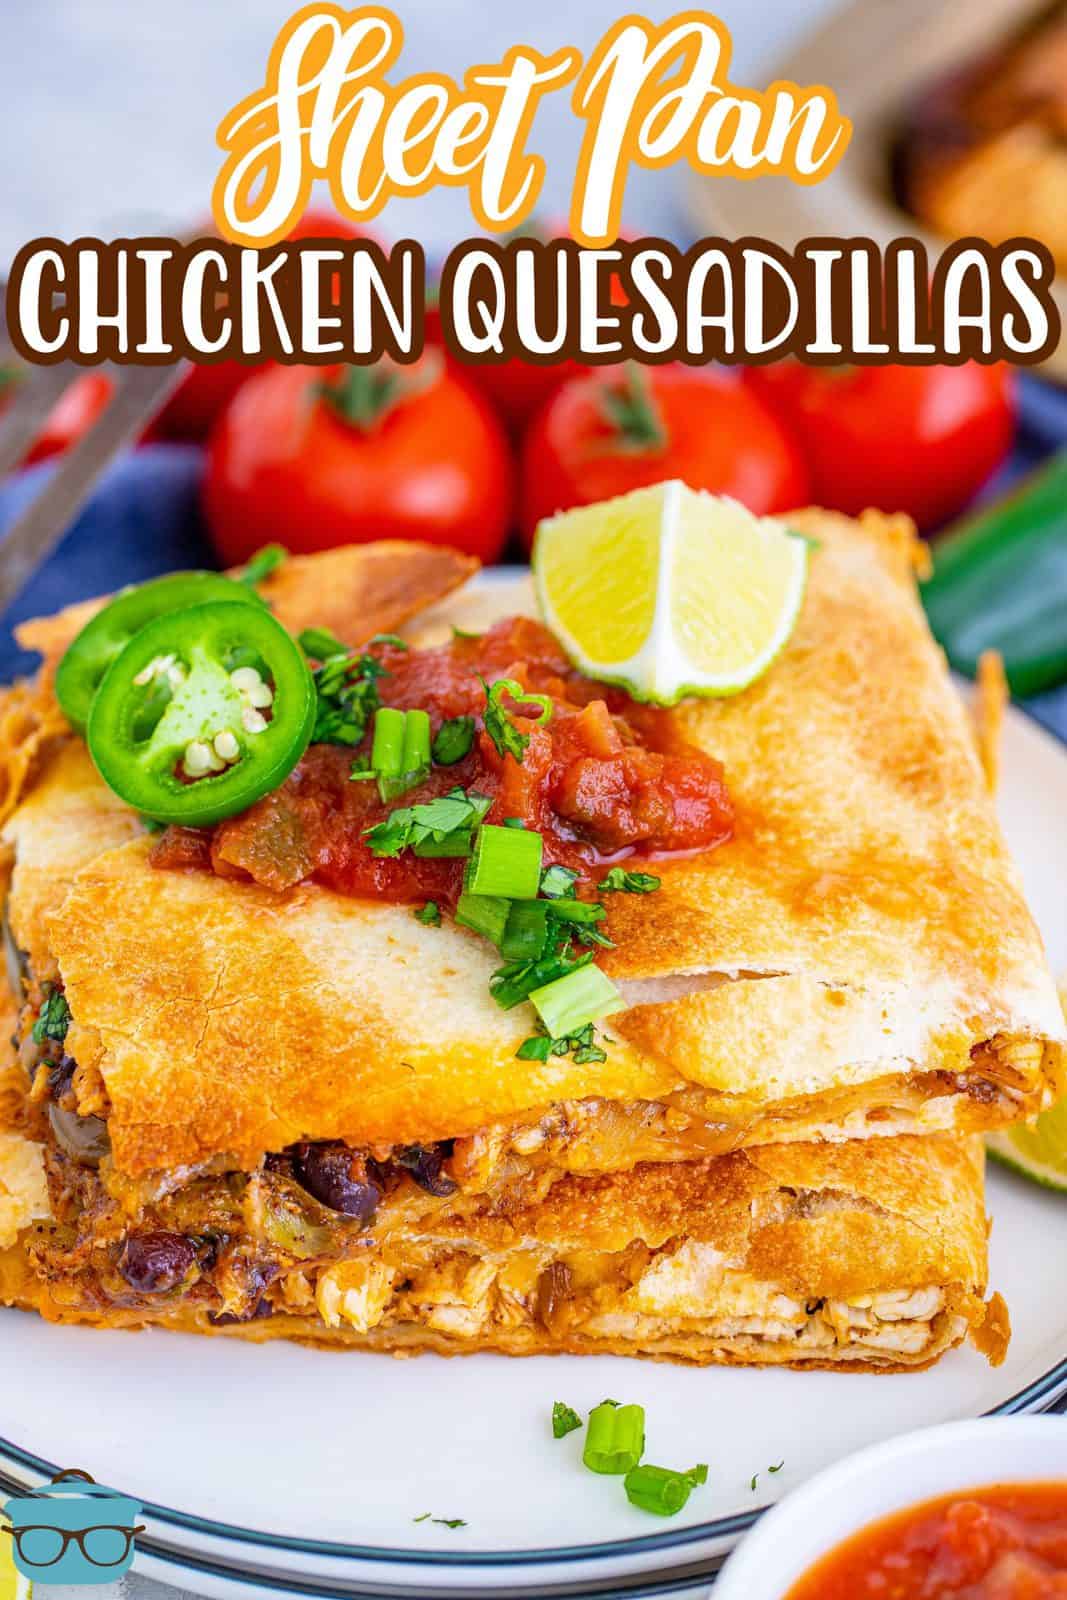 Immagine Pinterest di Quesadillas di pollo in padella impilati su un piatto bianco con condimenti.